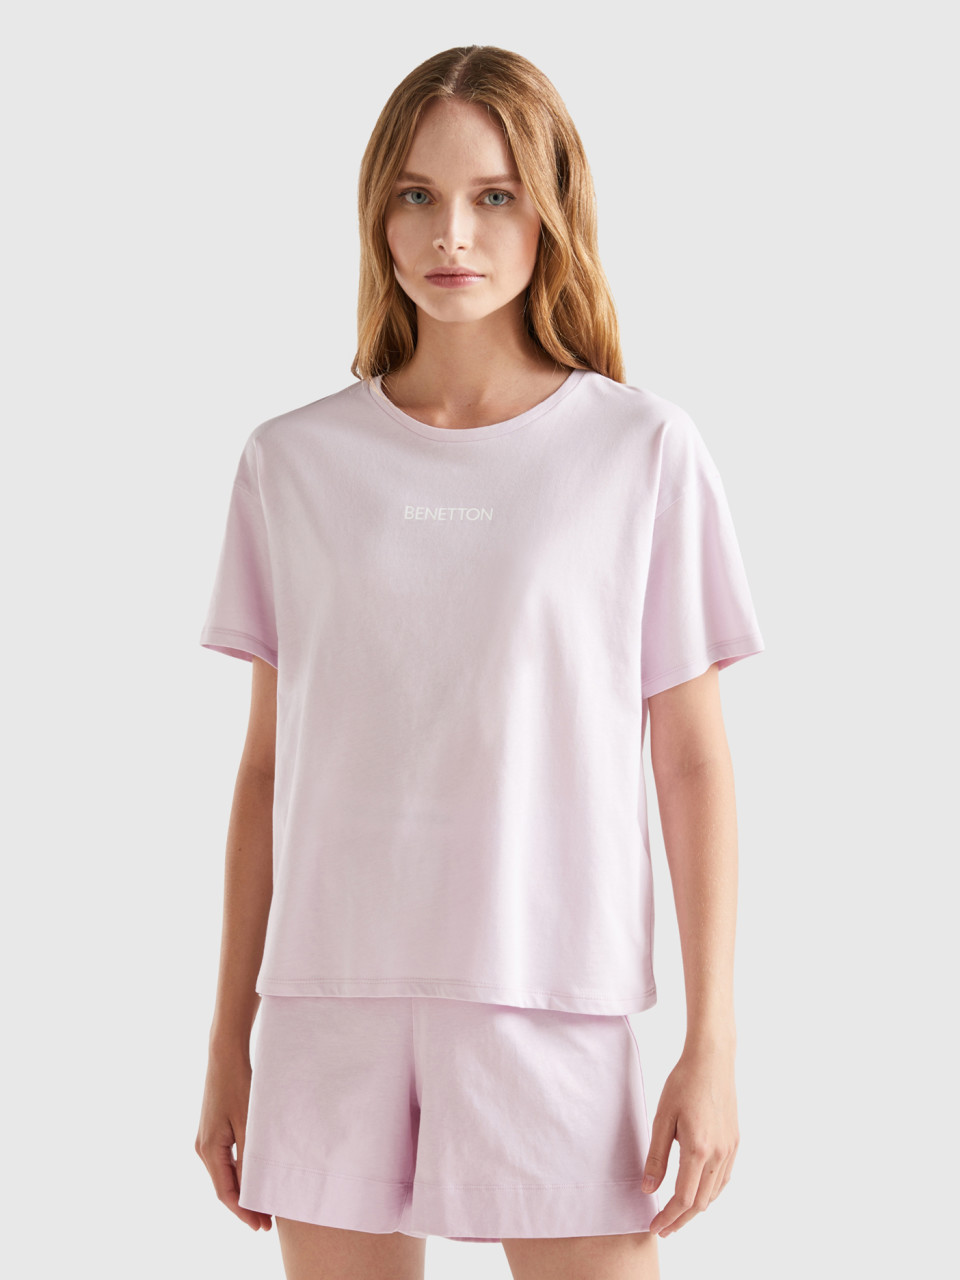 Benetton, 100% Cotton T-shirt, Soft Pink, Women